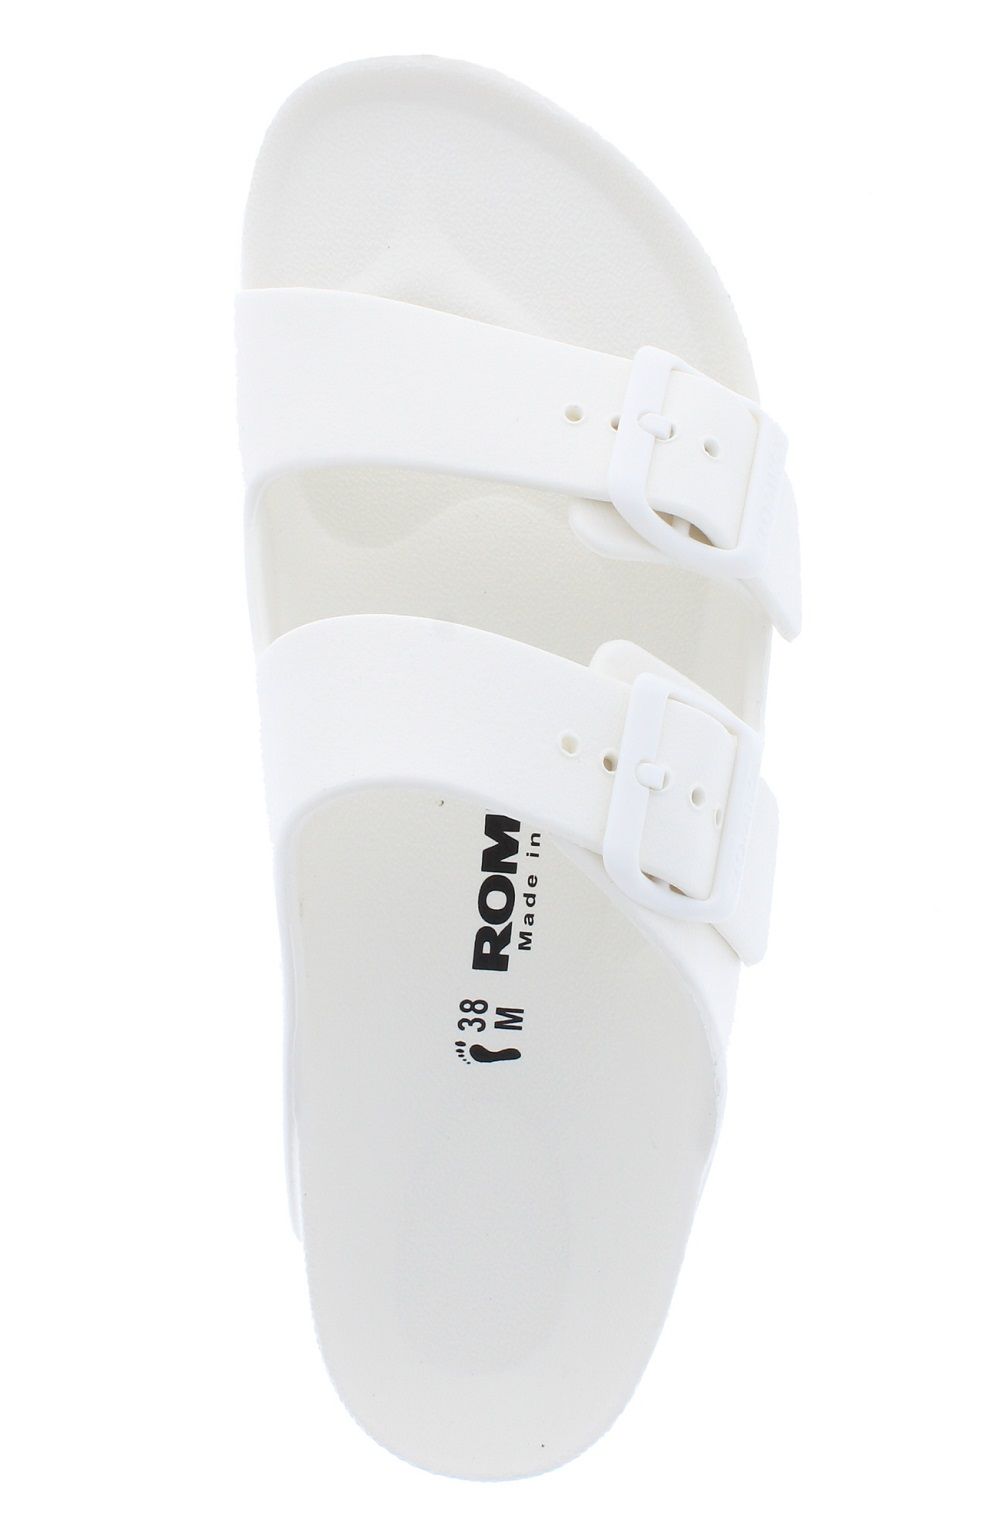 Romika Women's Roemer 12 EVA Sandals White